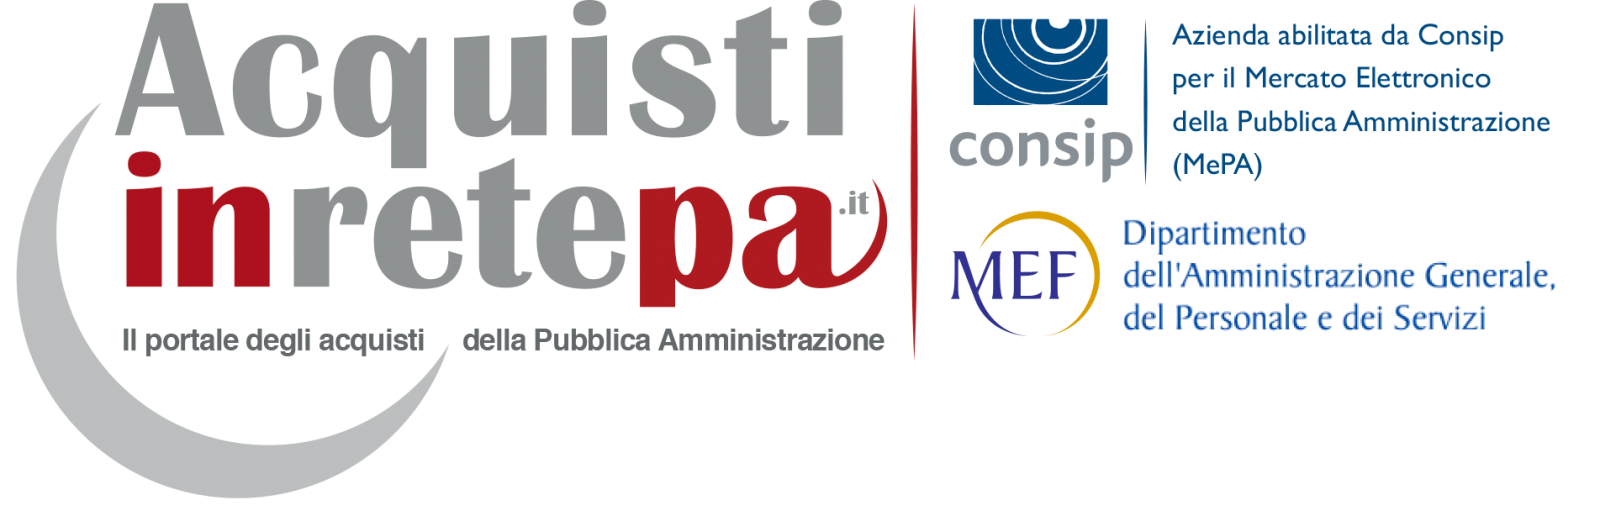 Il MePA nel nuovo sistema di e-Procurement Consip: guida pratica per non sbagliare con i nuovi strumenti di negoziazione e le nuove categorie merceologiche